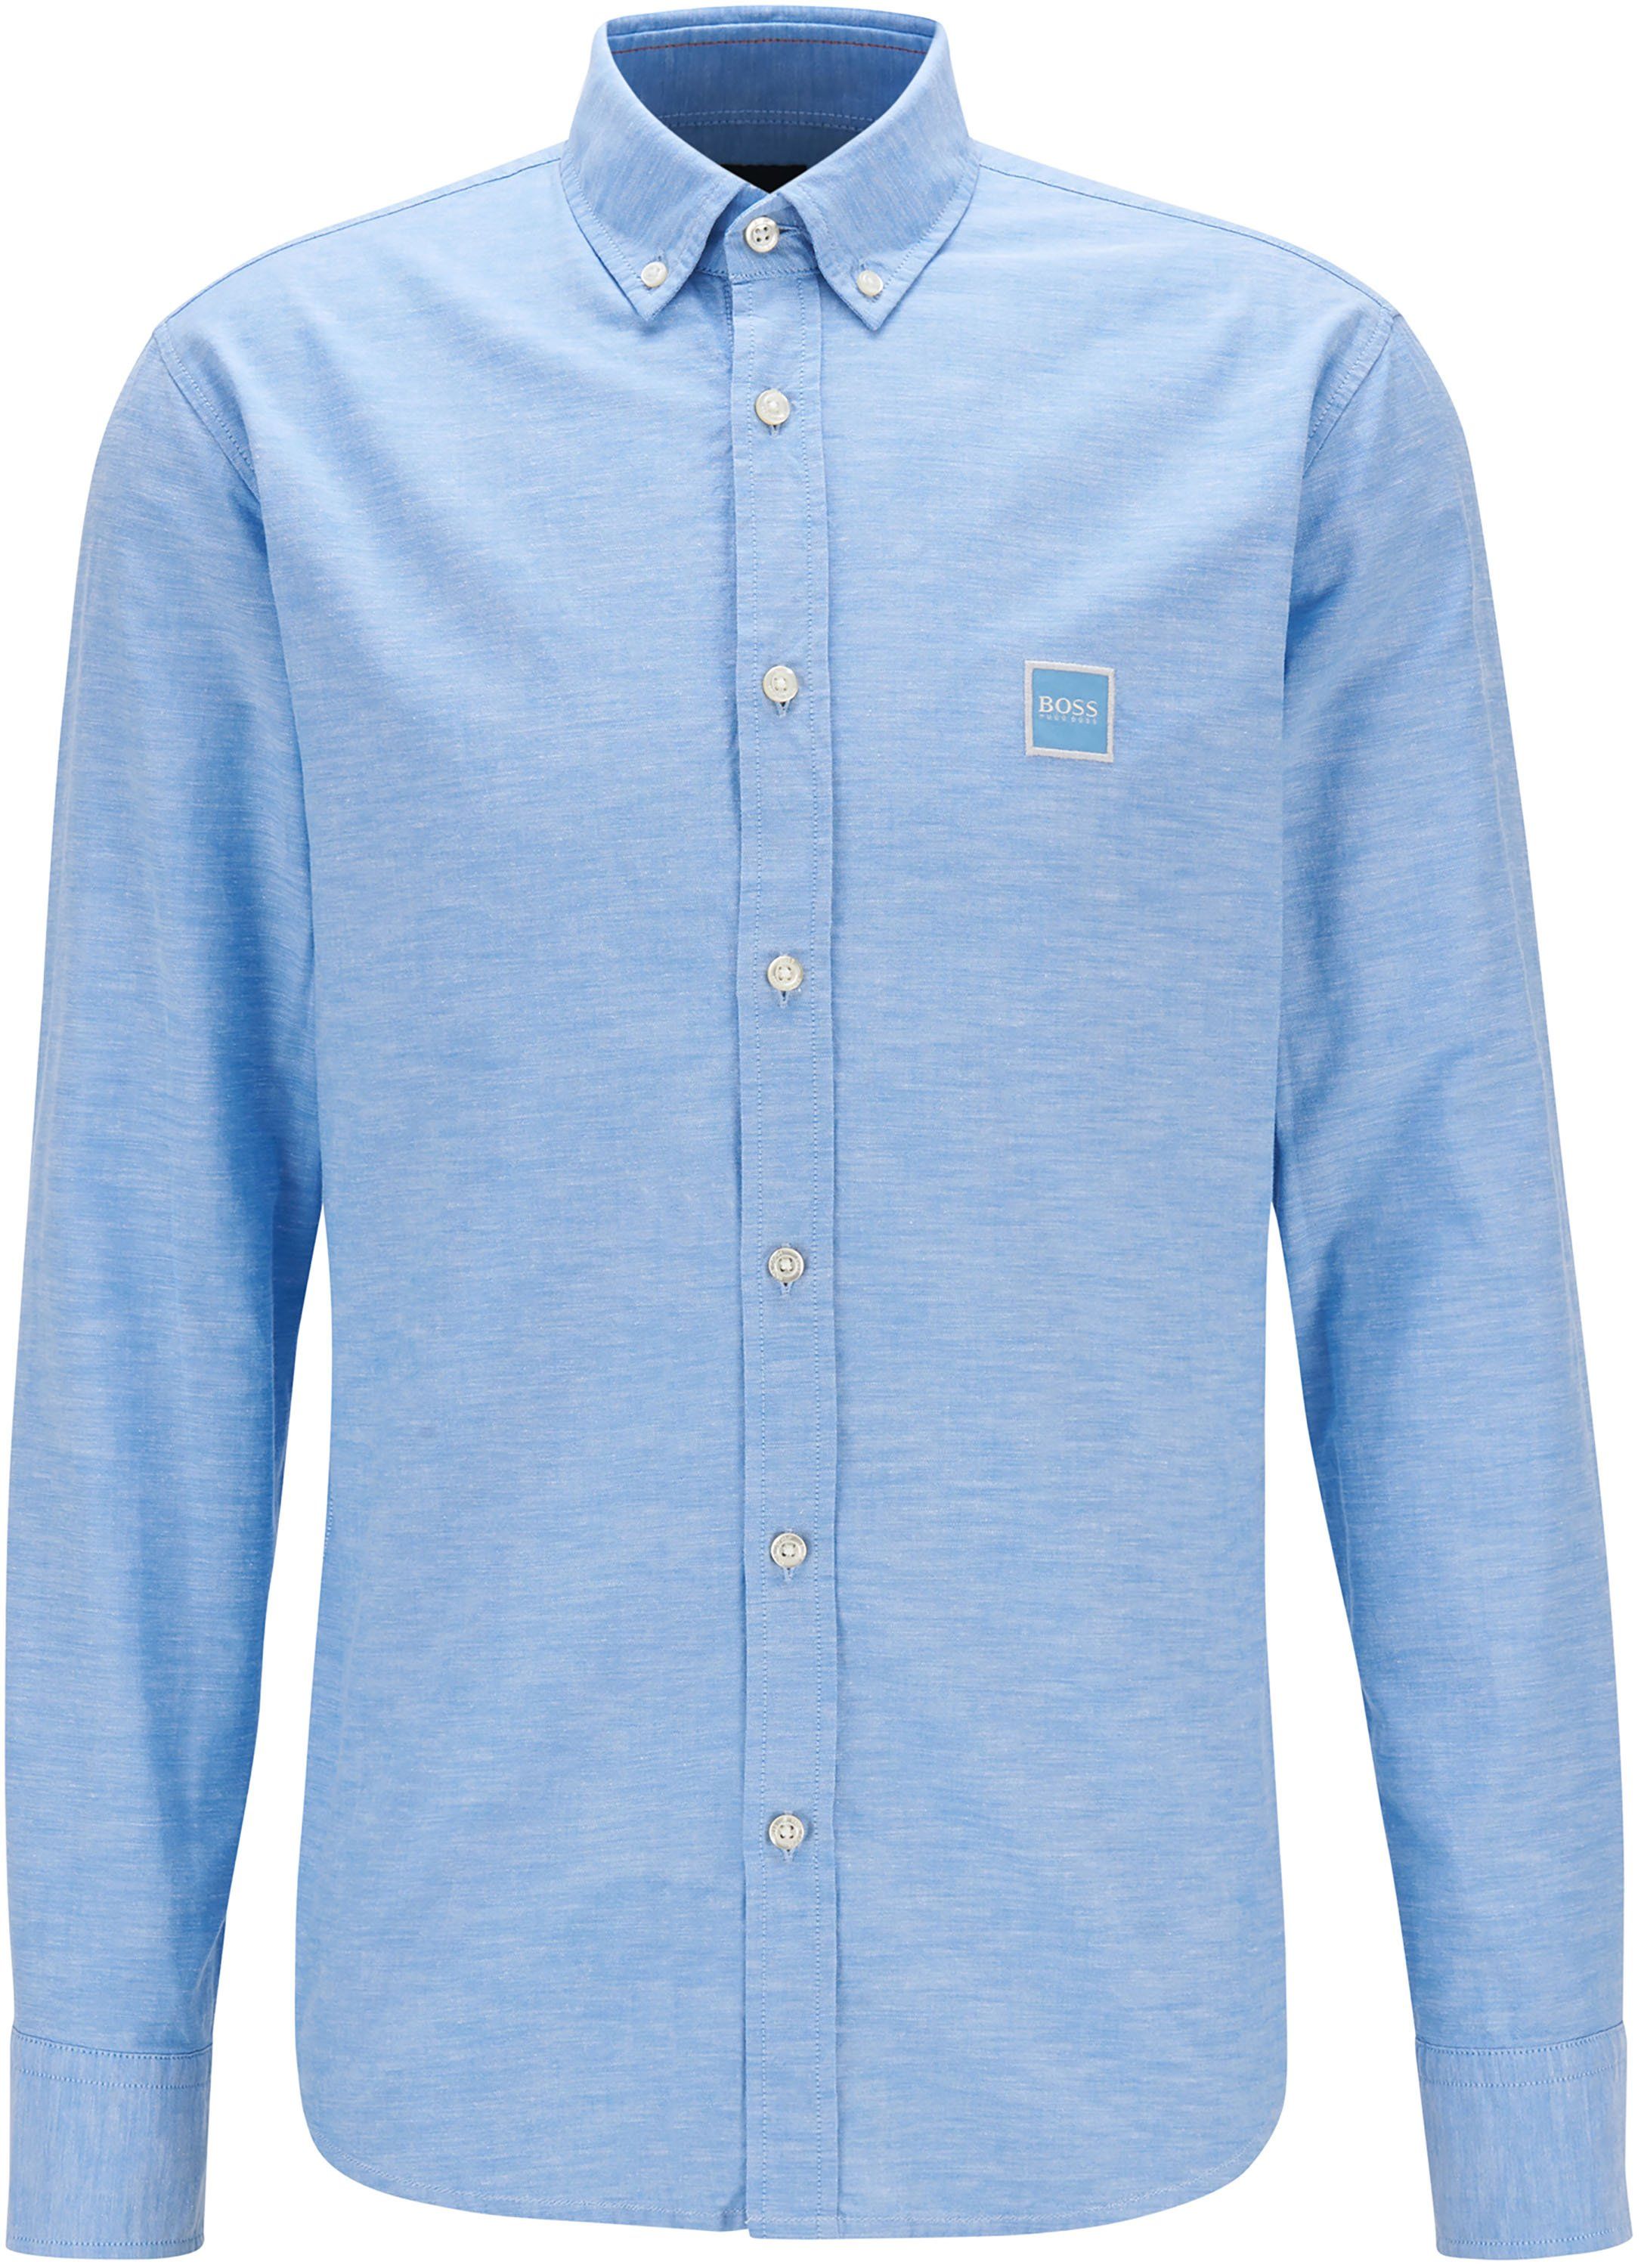 Hugo Boss Shirt Mabsoot Blue size M